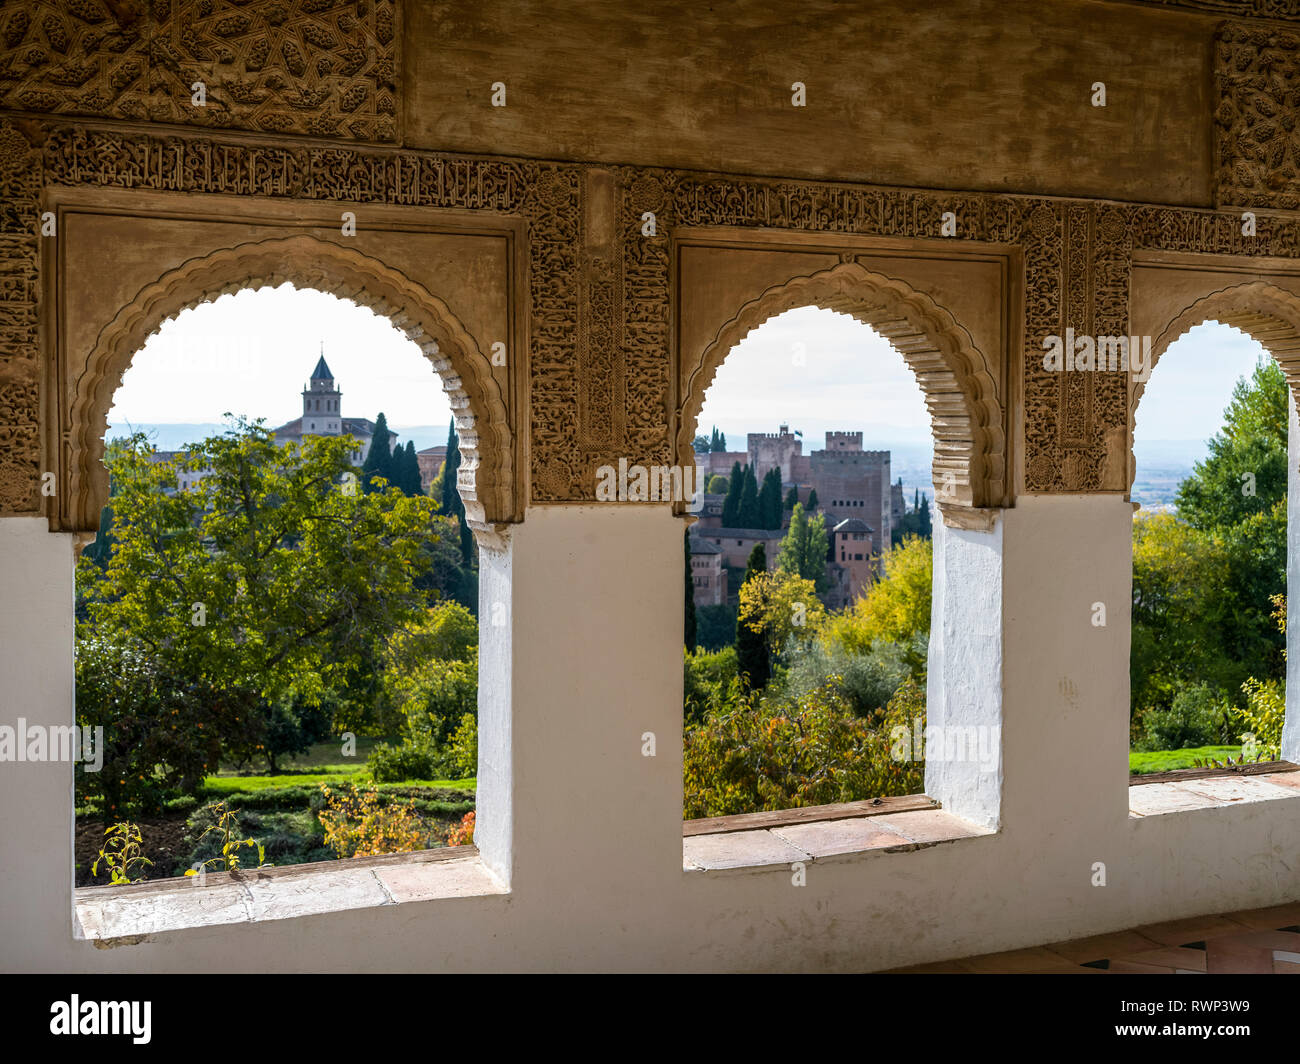 Reich verzierte Detail an einer Innenwand Fassade mit Blick auf die Alhambra, Granada, Provinz Granada, Spanien Stockfoto